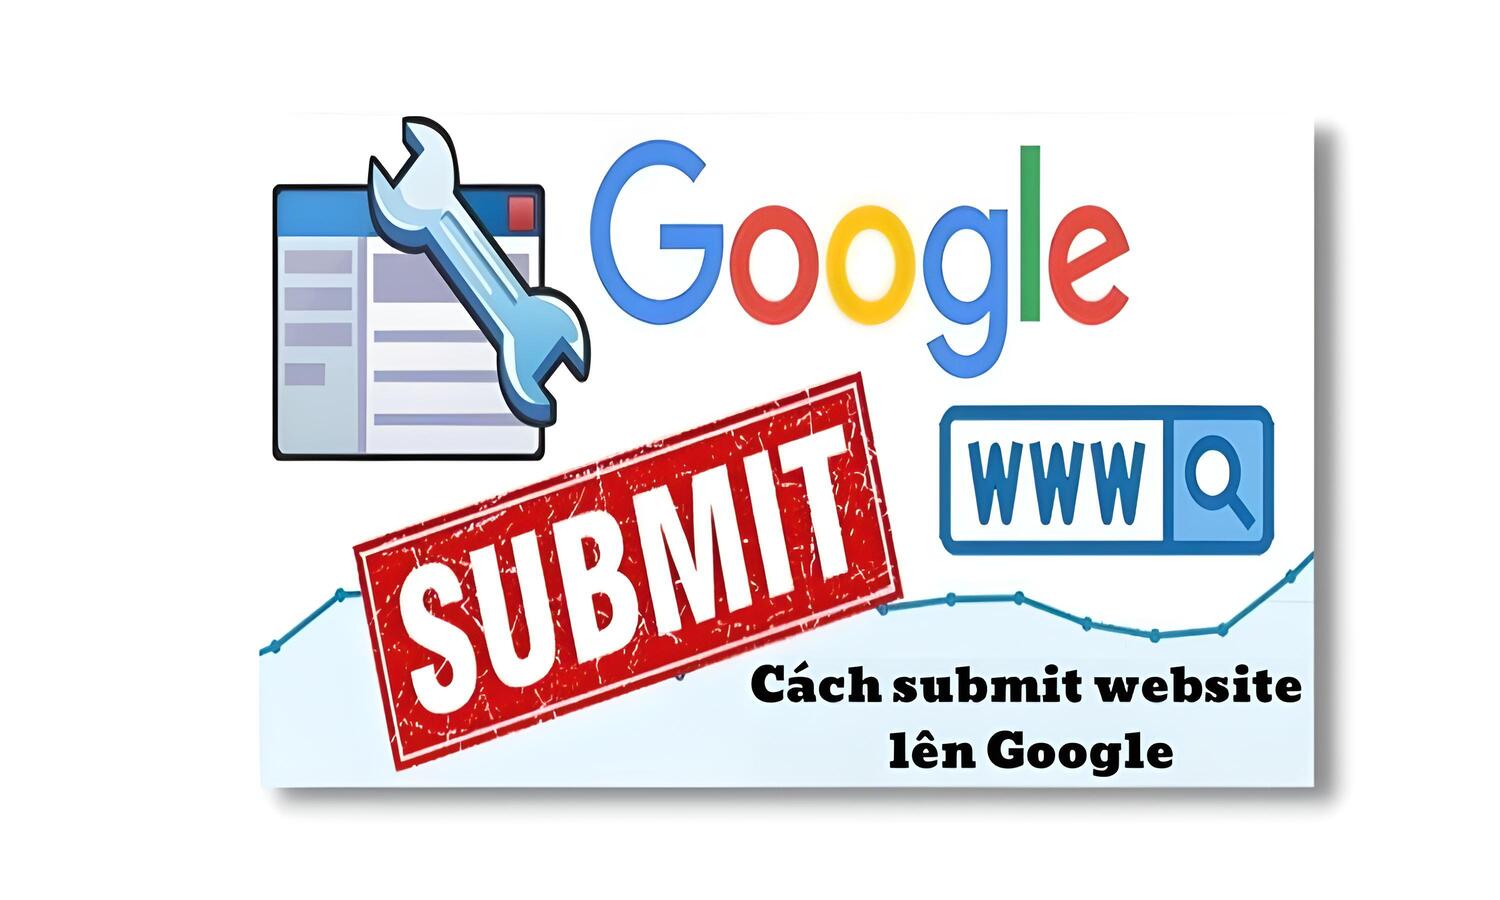 Cách Submit website lên Google | Hướng dẫn chi tiết cho người mới